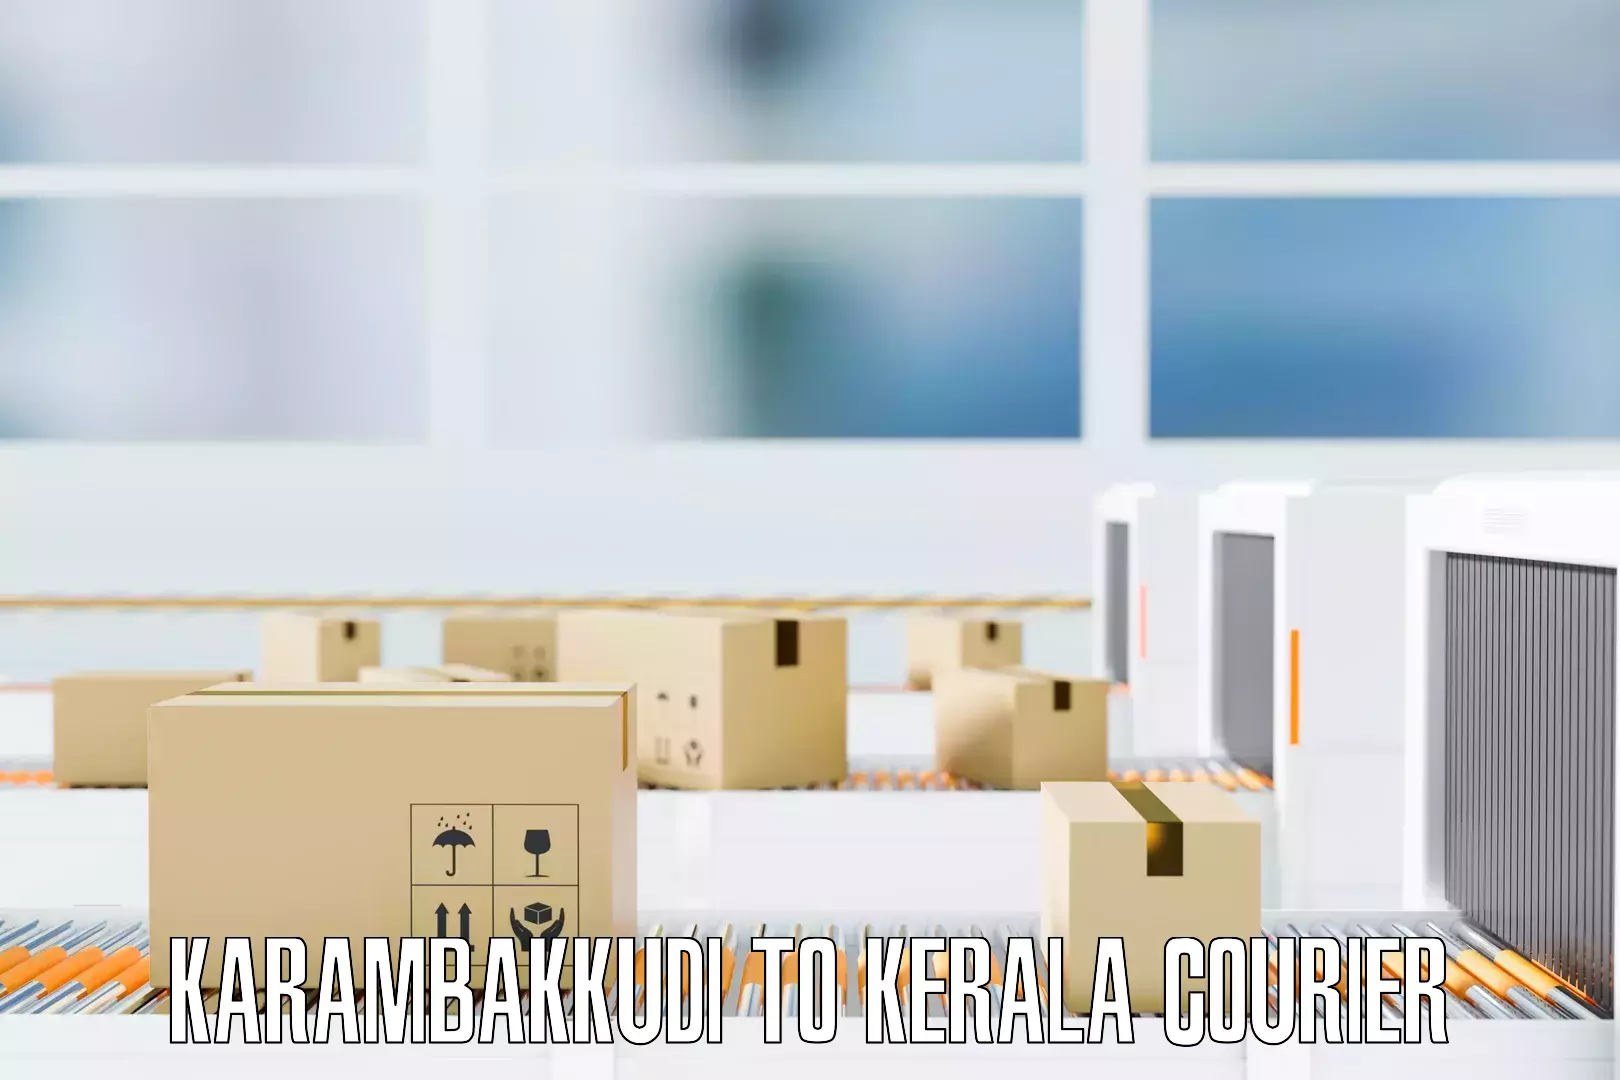 Skilled furniture transporters Karambakkudi to Munnar